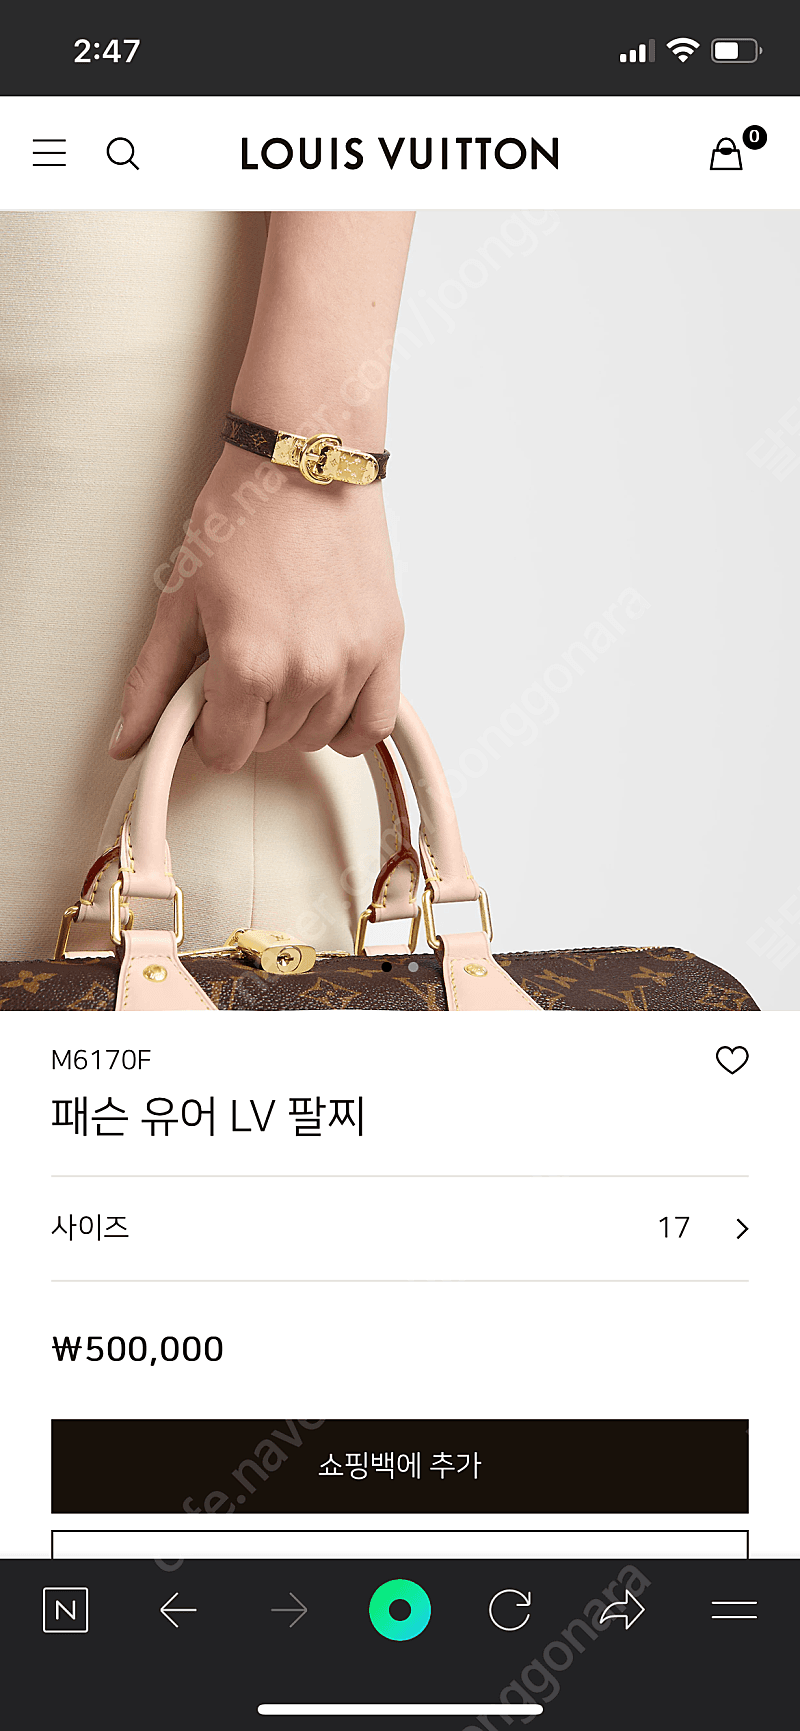 Louis Vuitton Fasten Your Lv Bracelet (M6170E, M6170F)